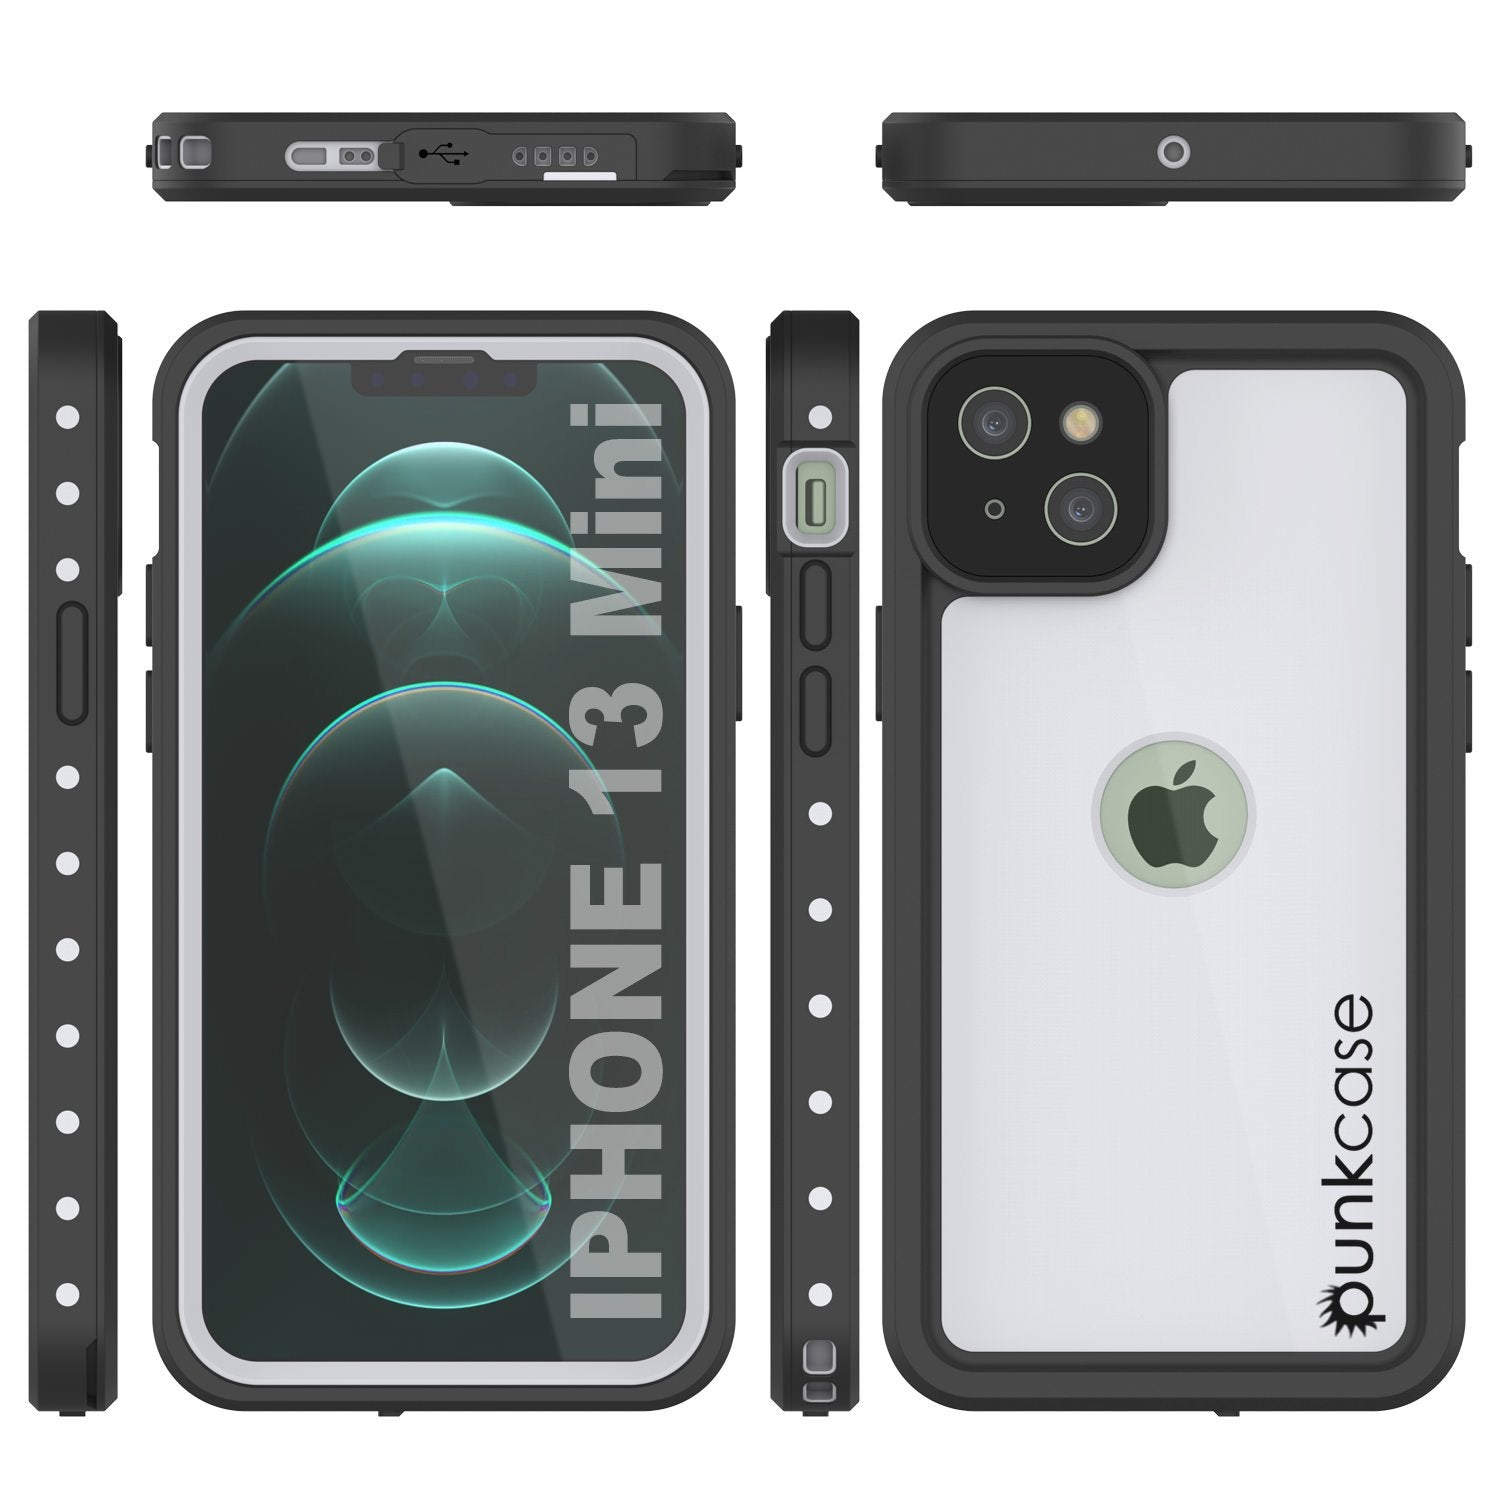 iPhone 13 Mini Waterproof IP68 Case, Punkcase [White] [StudStar Series] [Slim Fit] [Dirtproof]